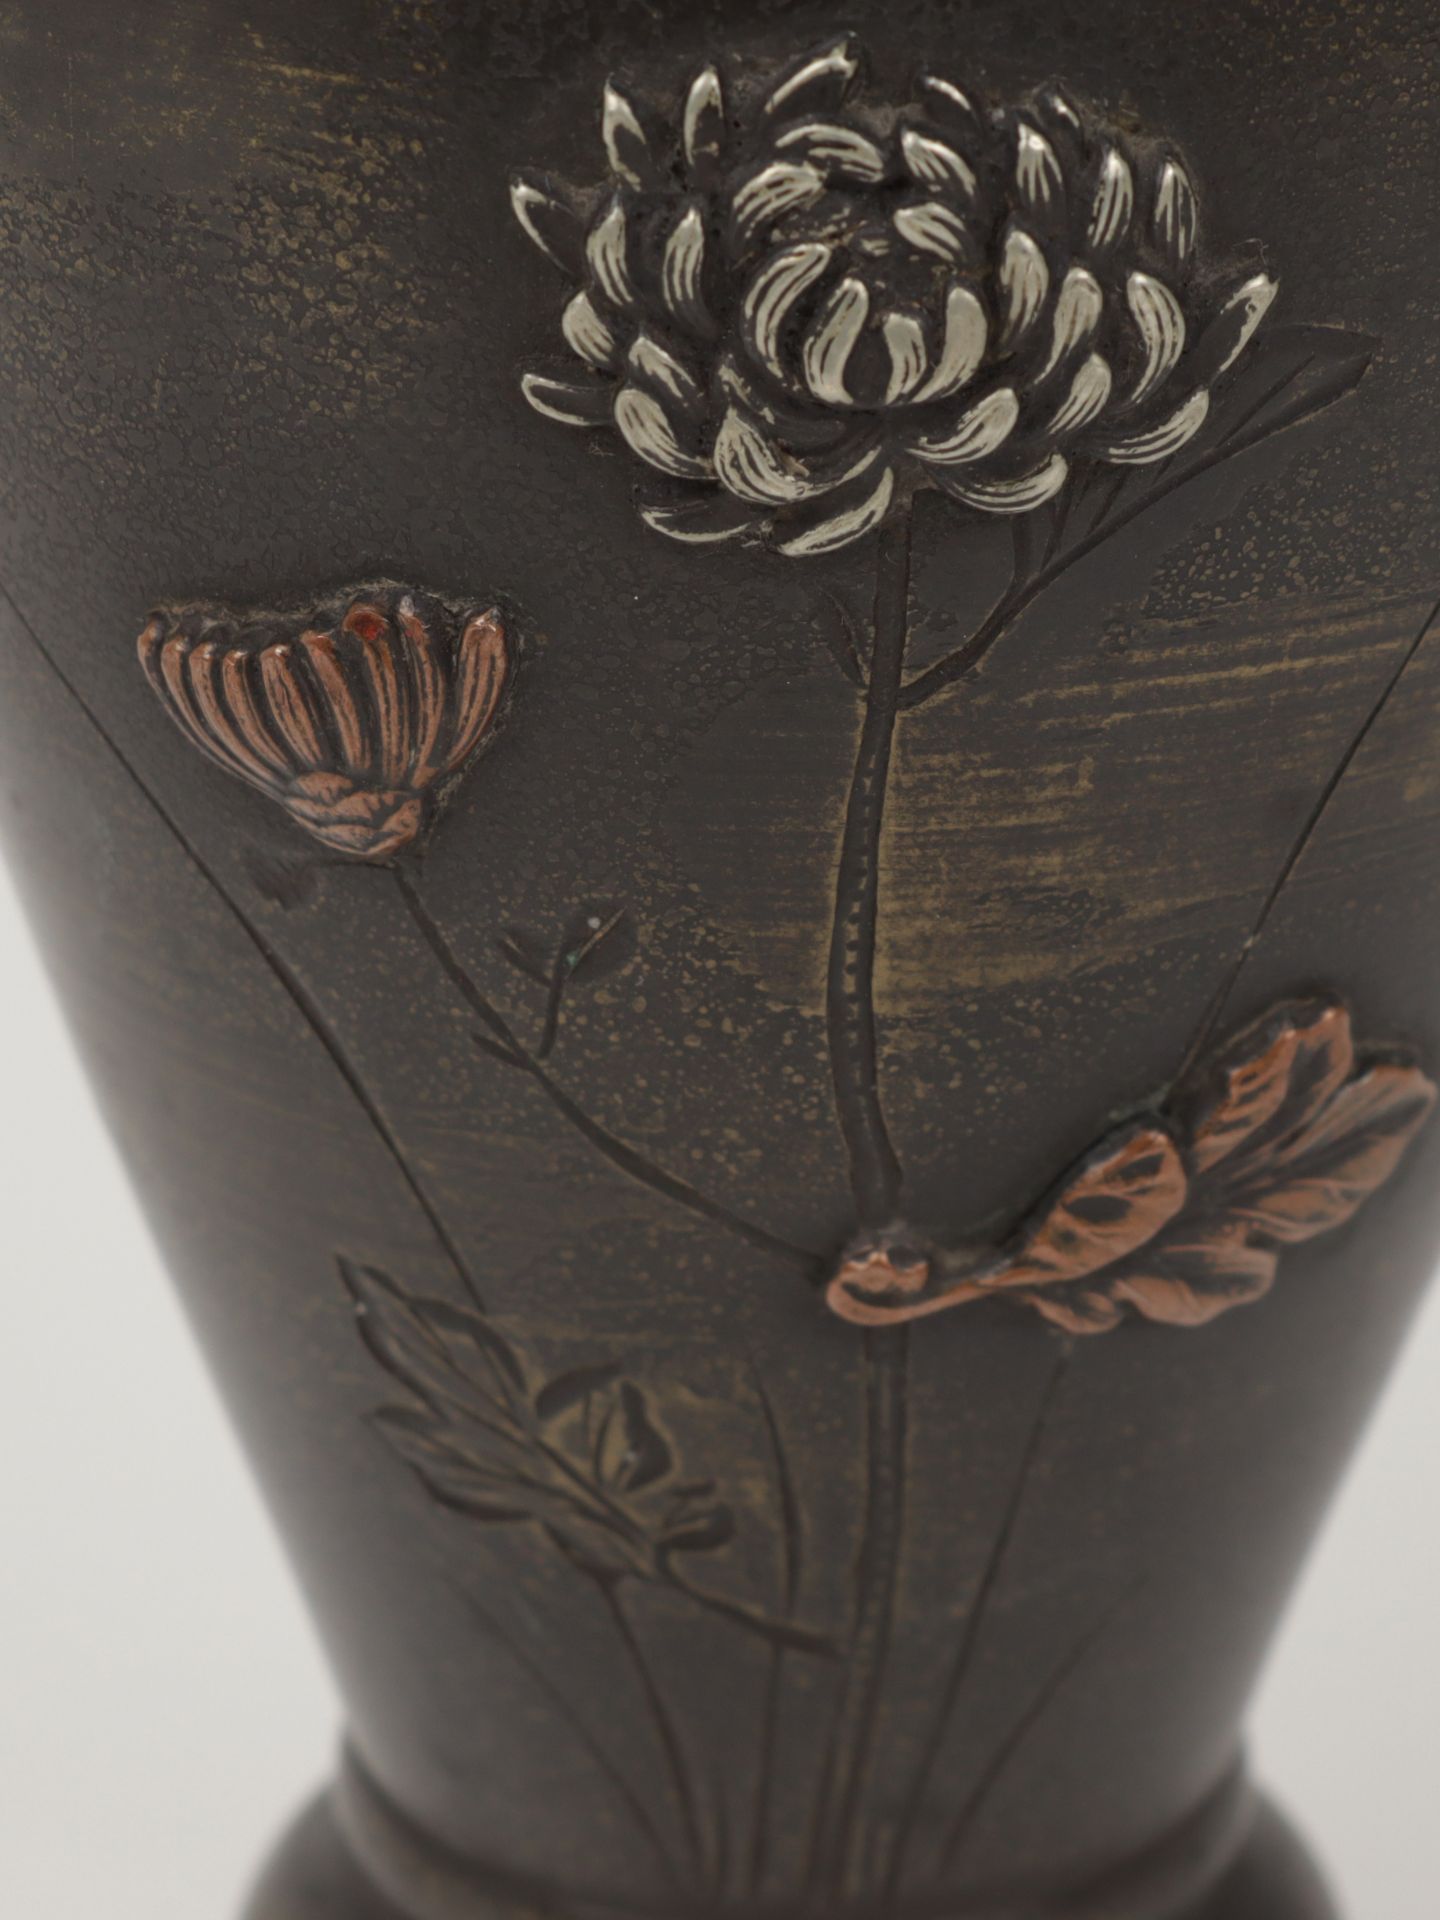 Vase um 1900, Japan, Bronze, reliefiert, Ritzdekor u. Metallauflagen in Kupfer, Messing u. a., - Bild 4 aus 5